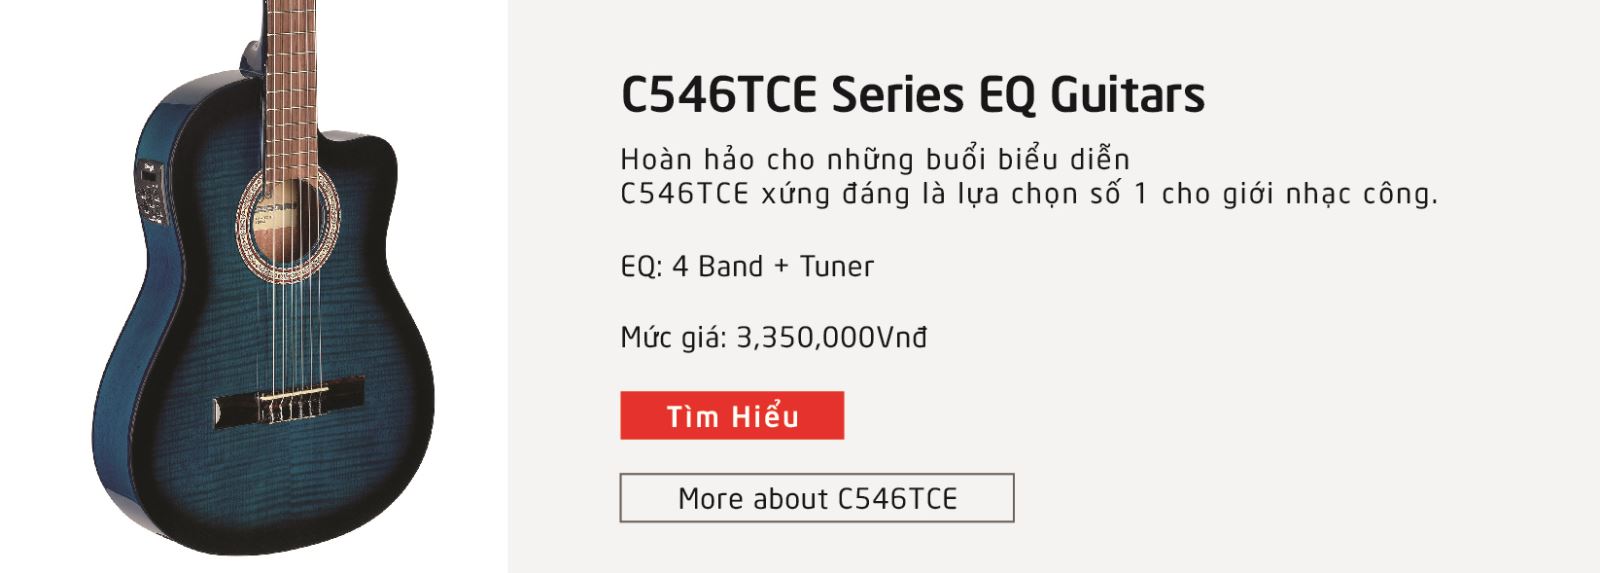 Giới thiệu hãng đàn guitar stagg C546TCE EQ